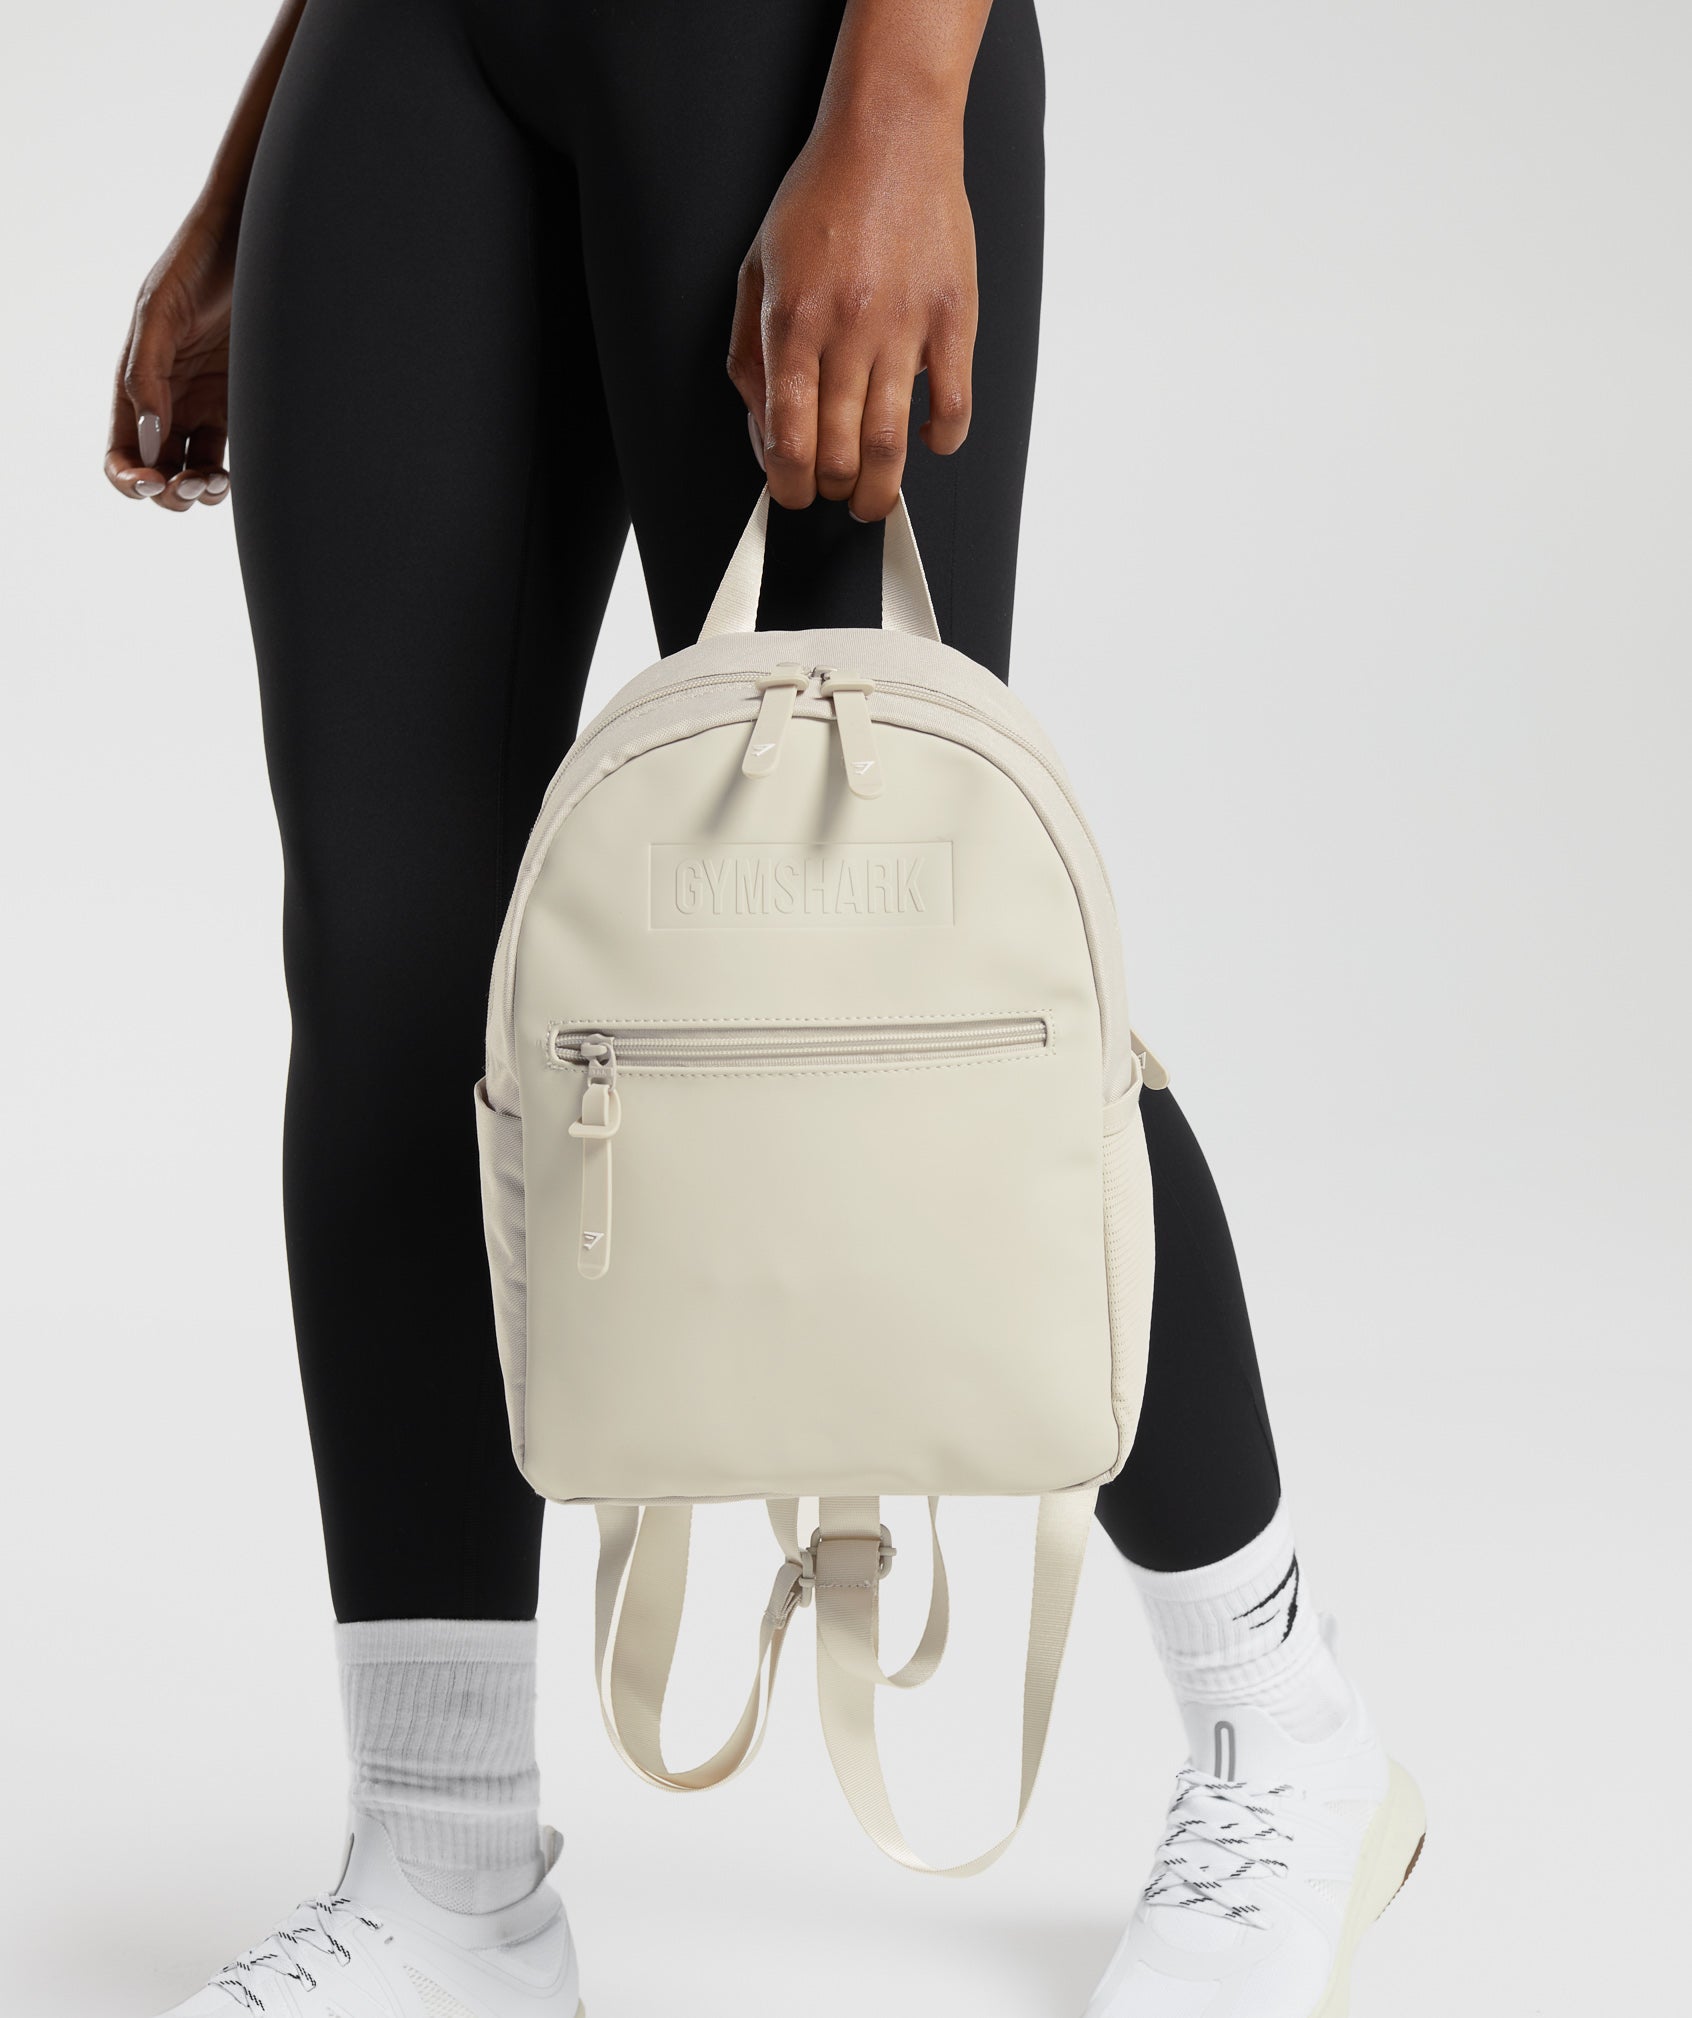 Gymshark Everyday Mini Backpack Black 12”H x 9”W x 4”D Side Pockets Bag Pack